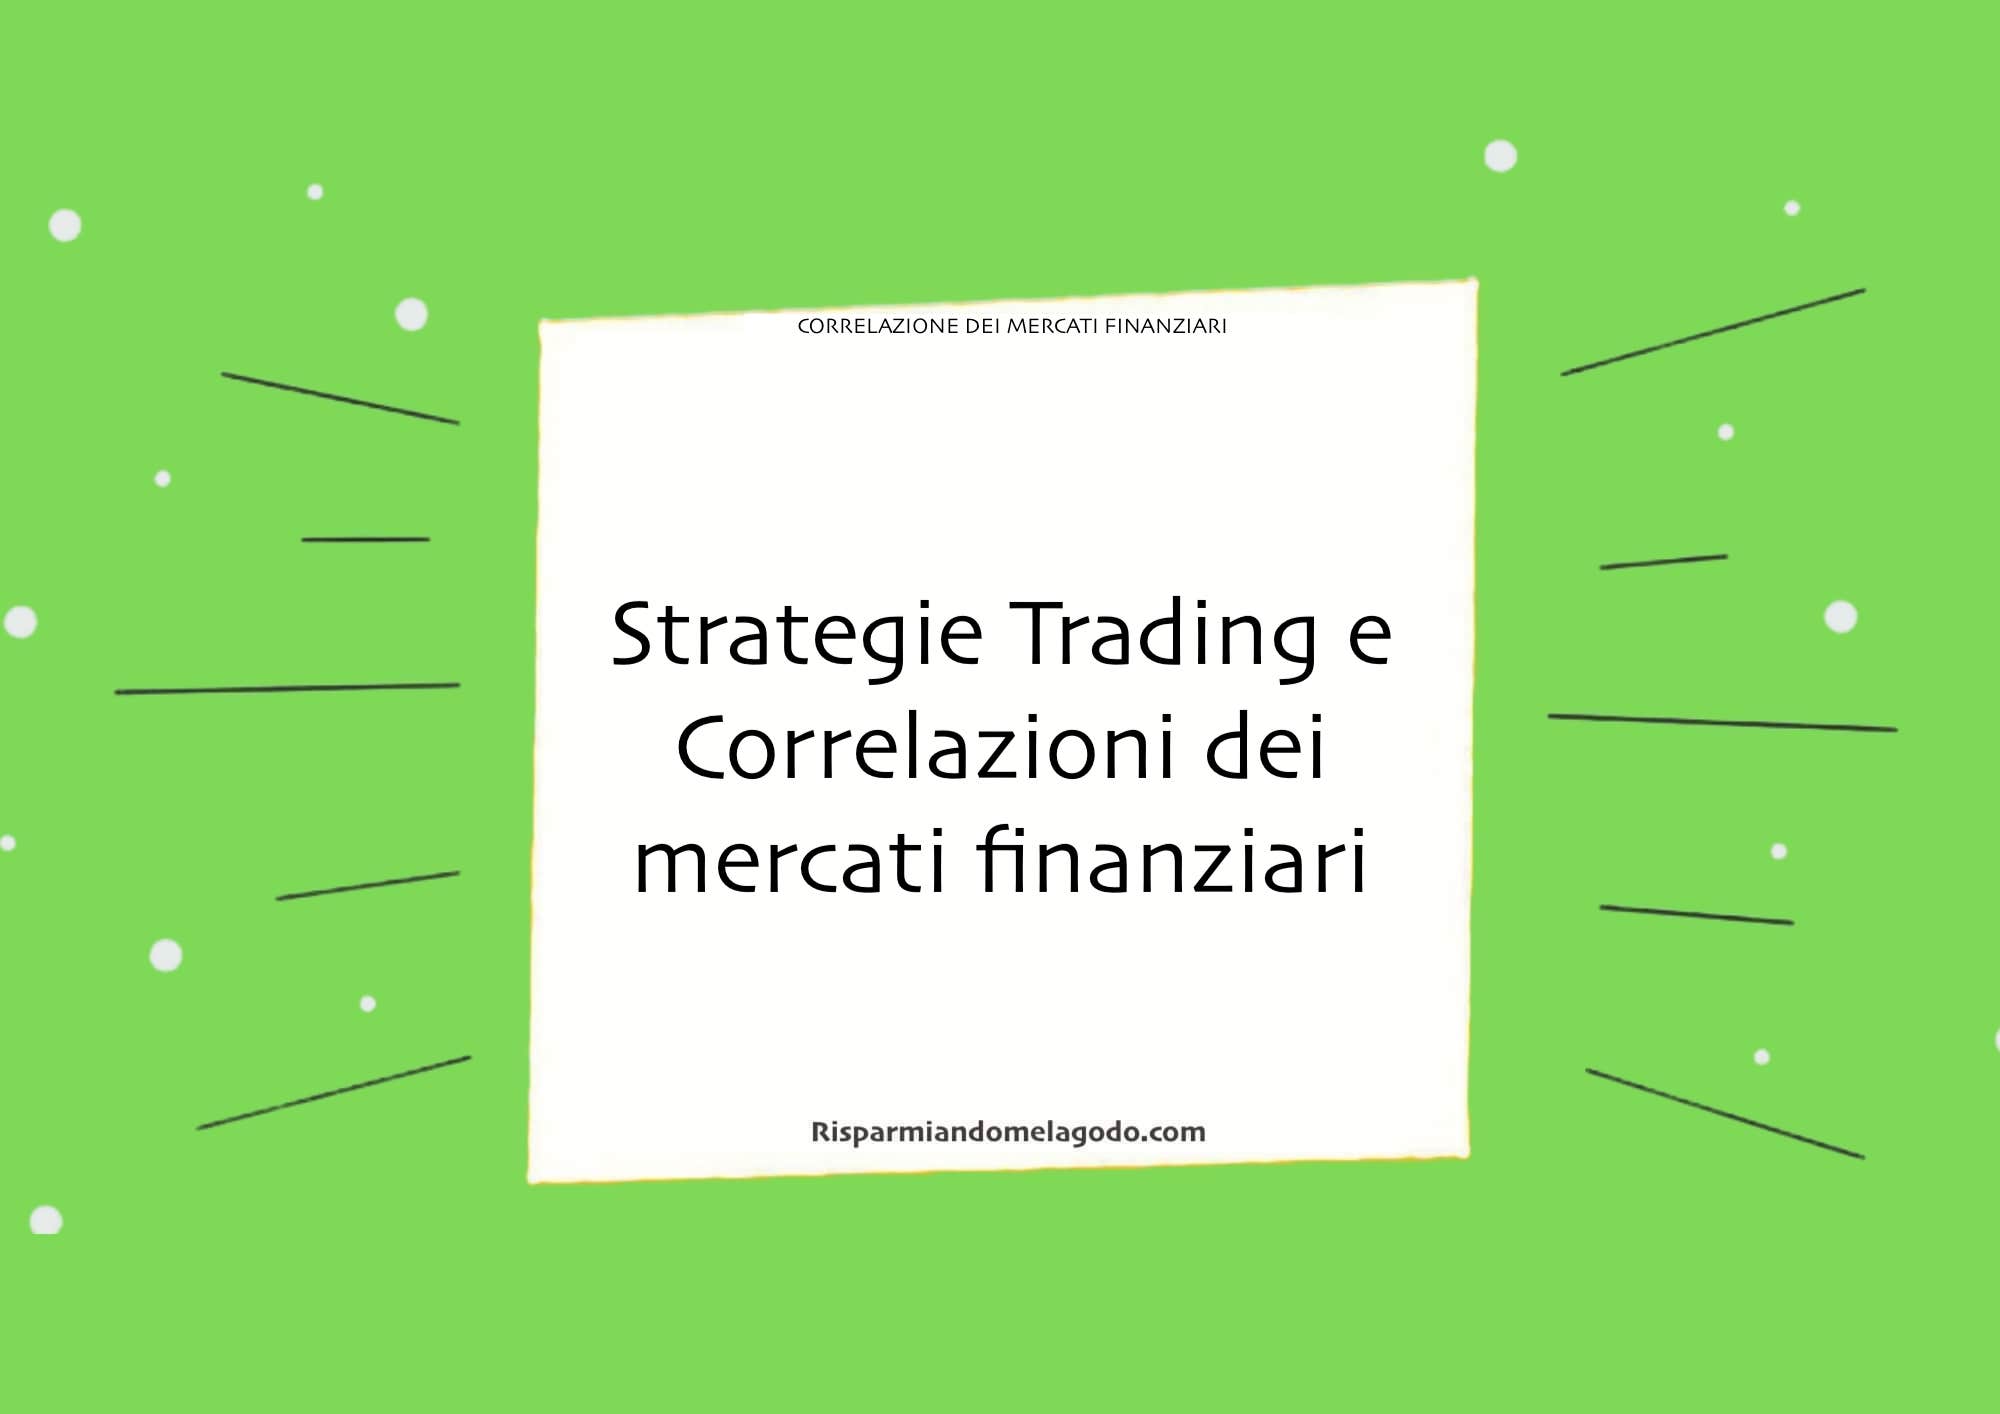 Strategie Trading e Correlazioni dei mercati finanziari: